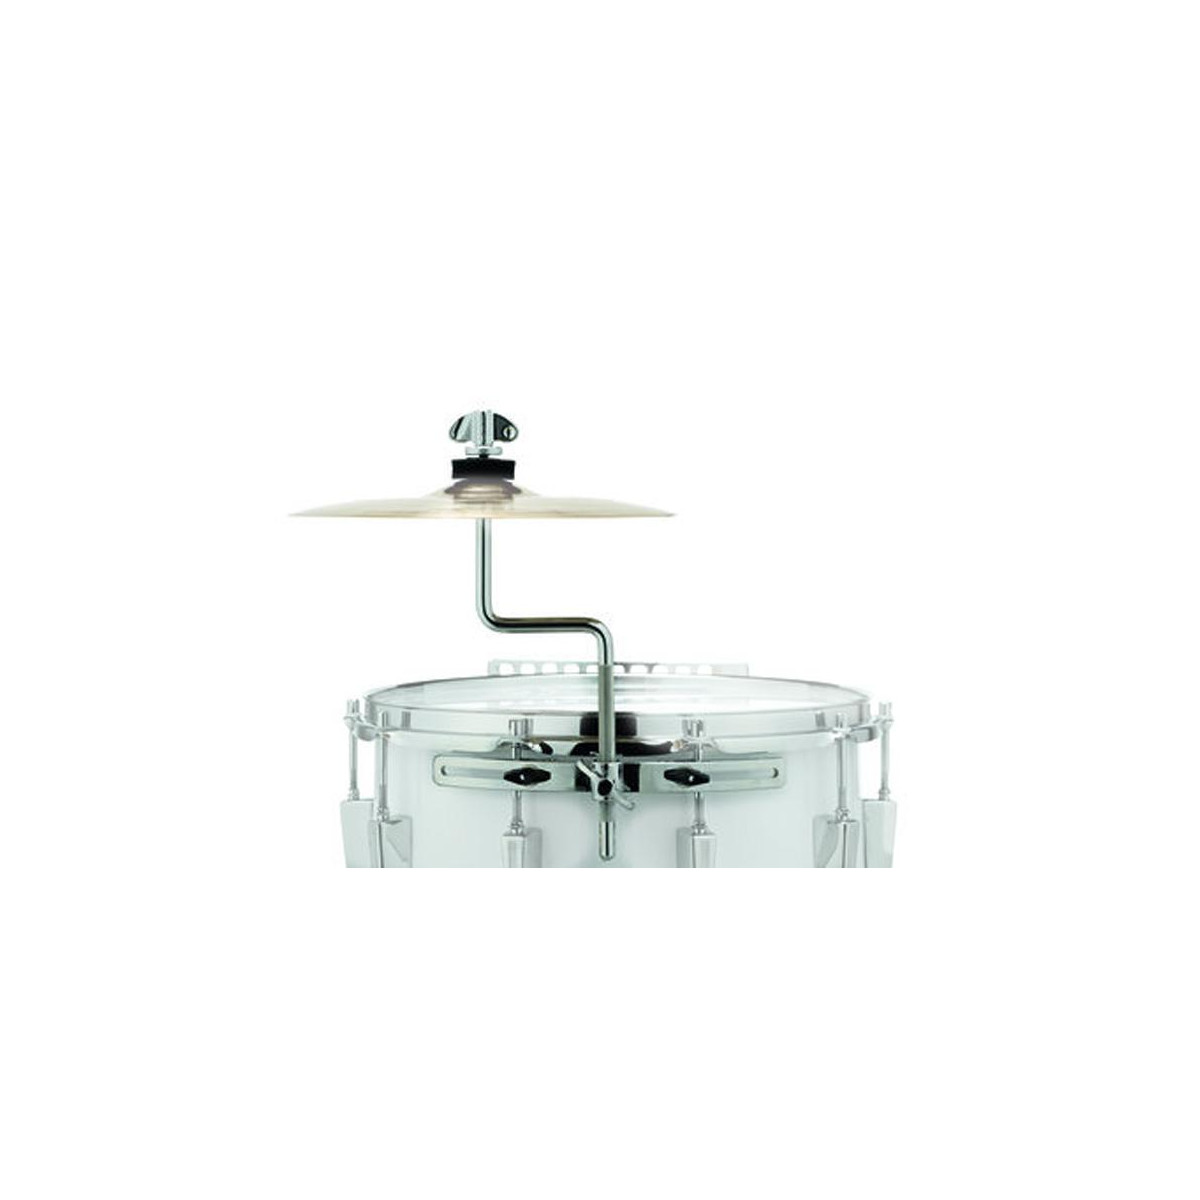 Sonor Support cymbale Klang Boy ZM 6547 pour grosse caisse fanfare